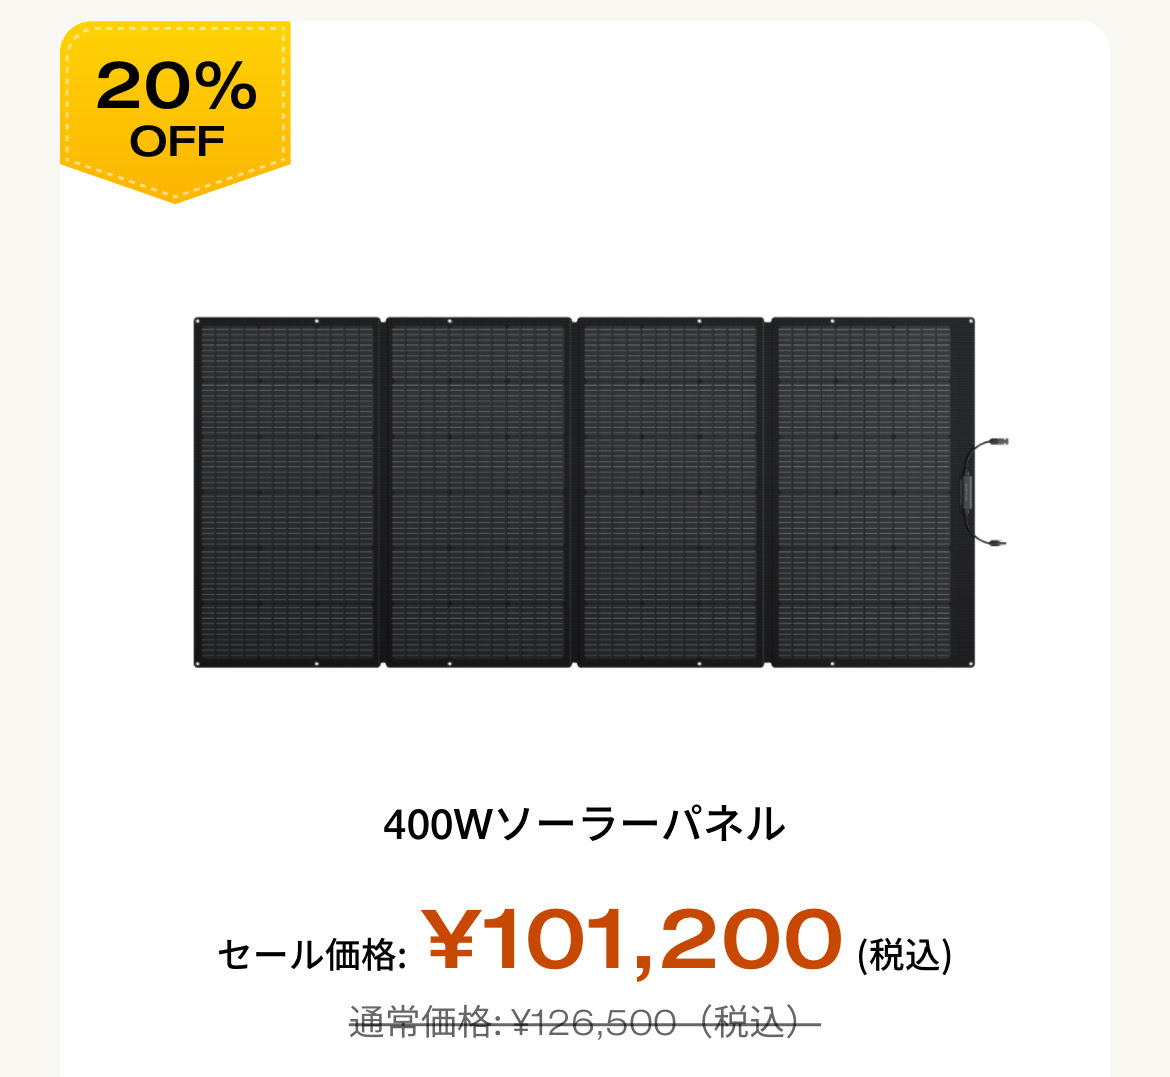 400W ソーラーパネル 20%OFF 通常価格 126,500 セール価格 101,200 